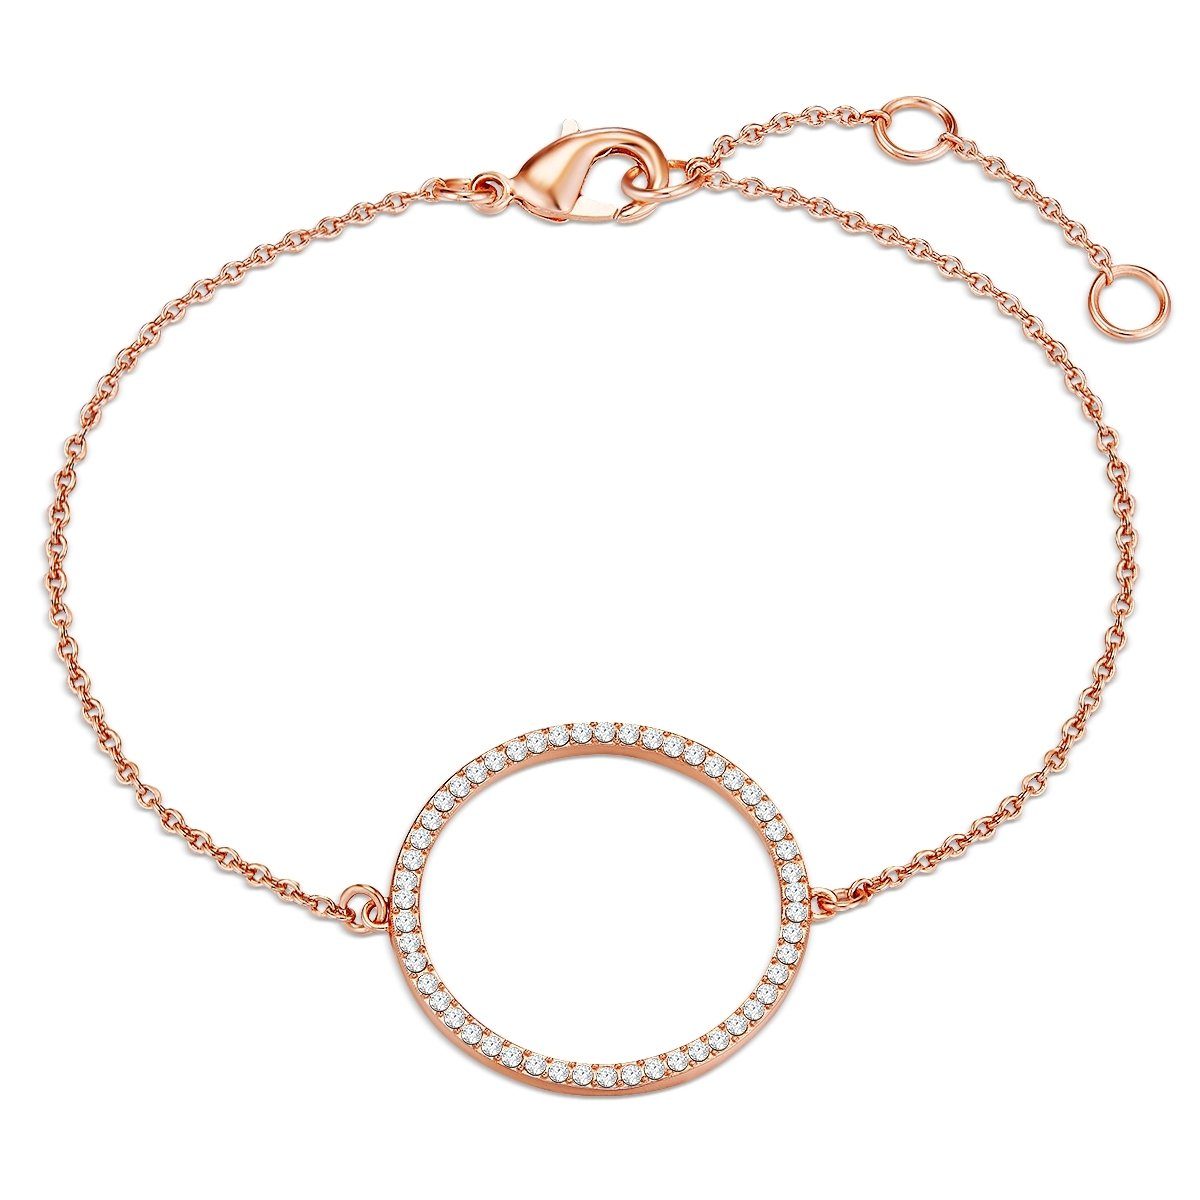 Lulu & Jane Armband Armband roségold verziert mit Kristallen von Swarovski®  weiß, Länge ca. 18,5 cm (+ 4,0 cm Verlängerung)